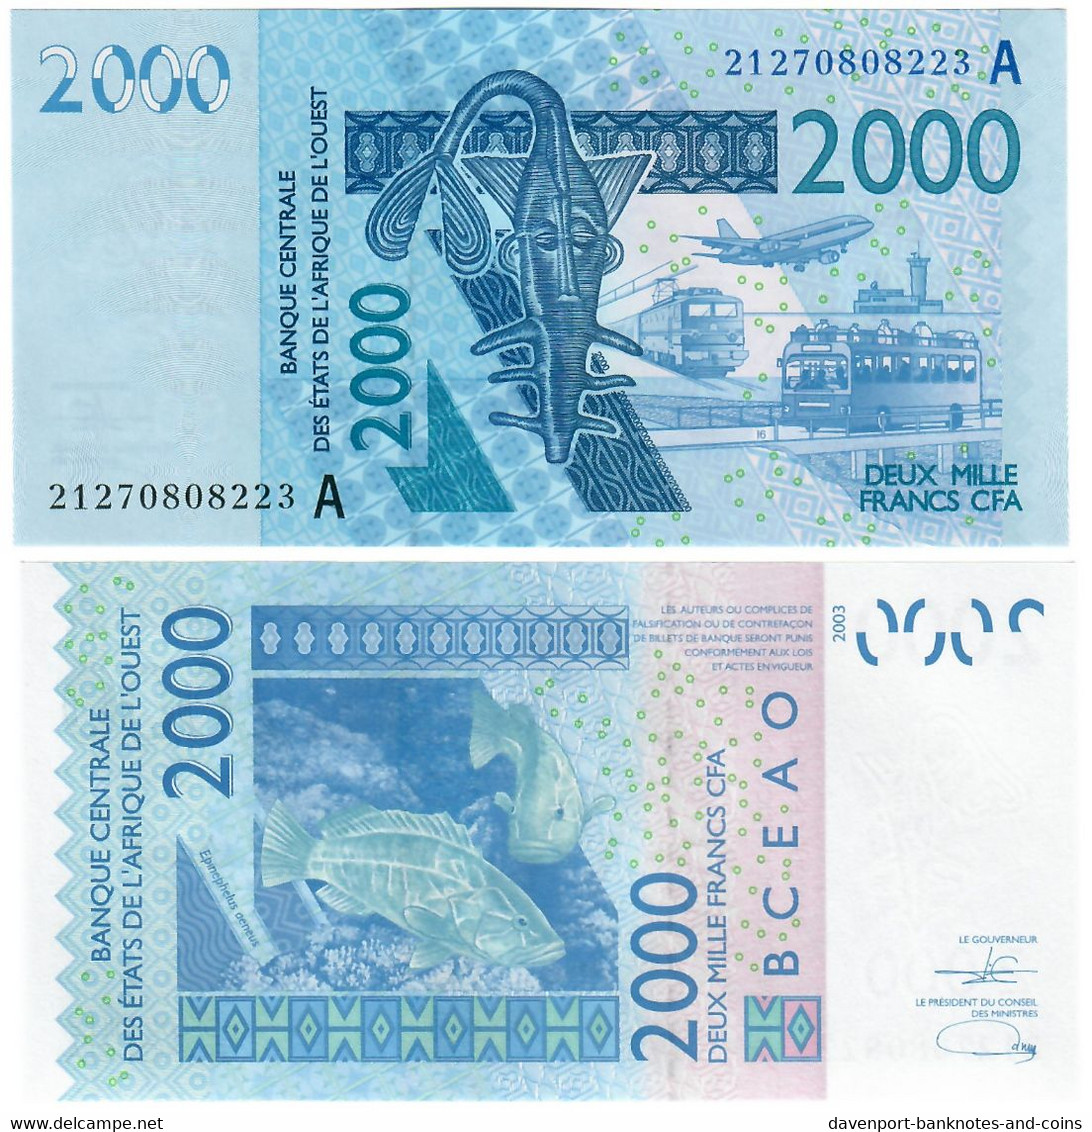 Côte D'Ivoire (Ivory Coast) 2000 Francs CFA 2003 (2021) "A" UNC - Côte D'Ivoire